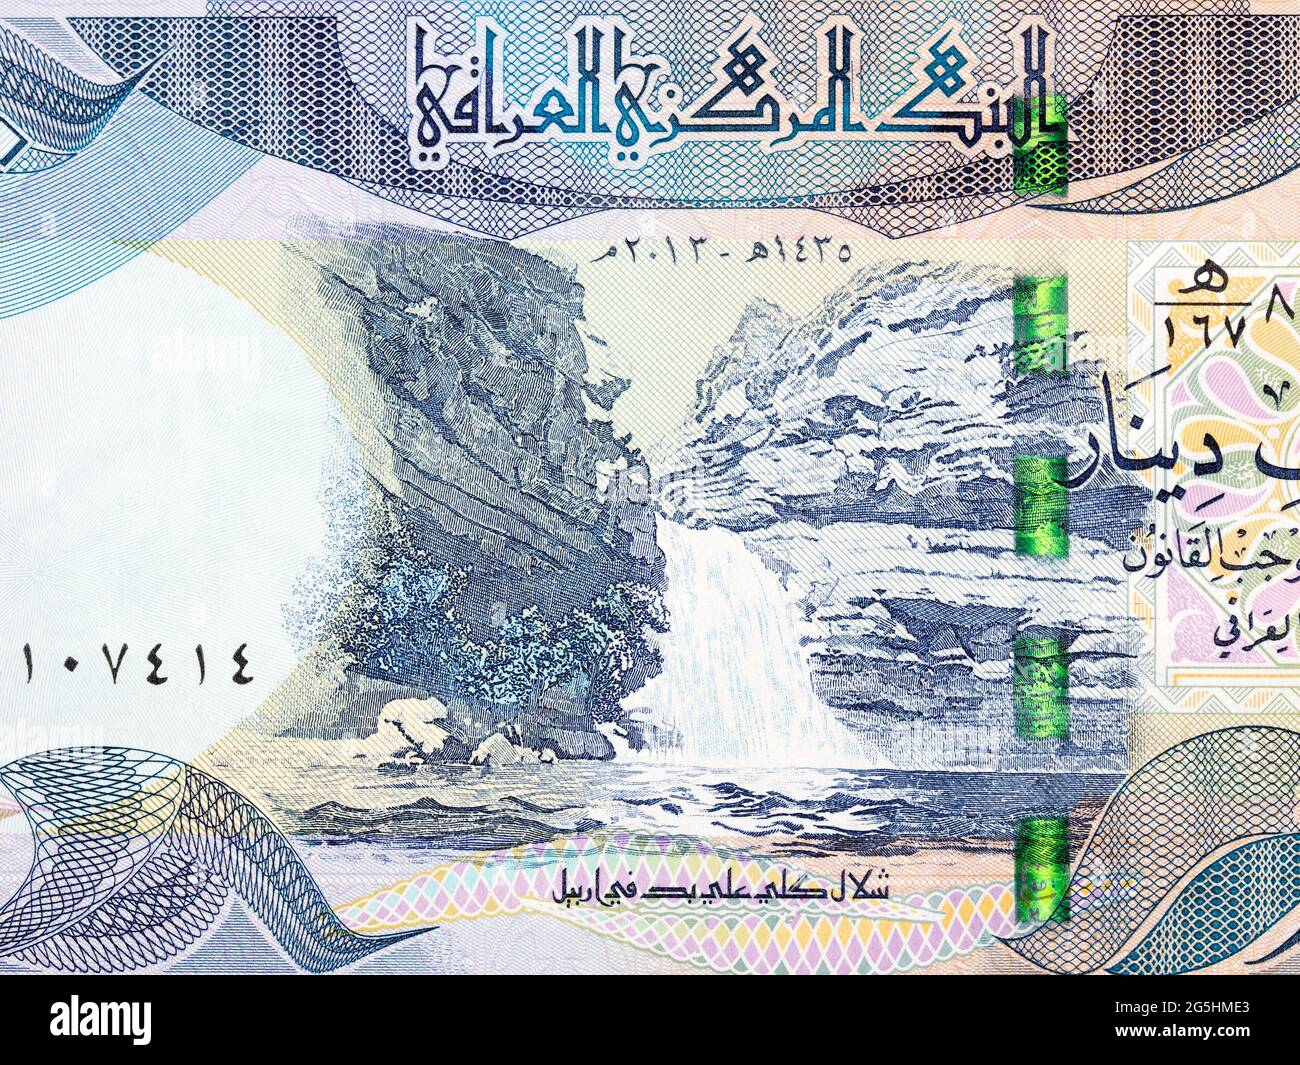 Geli Ali Beg Waterfall from Iraqi money Stock Photo